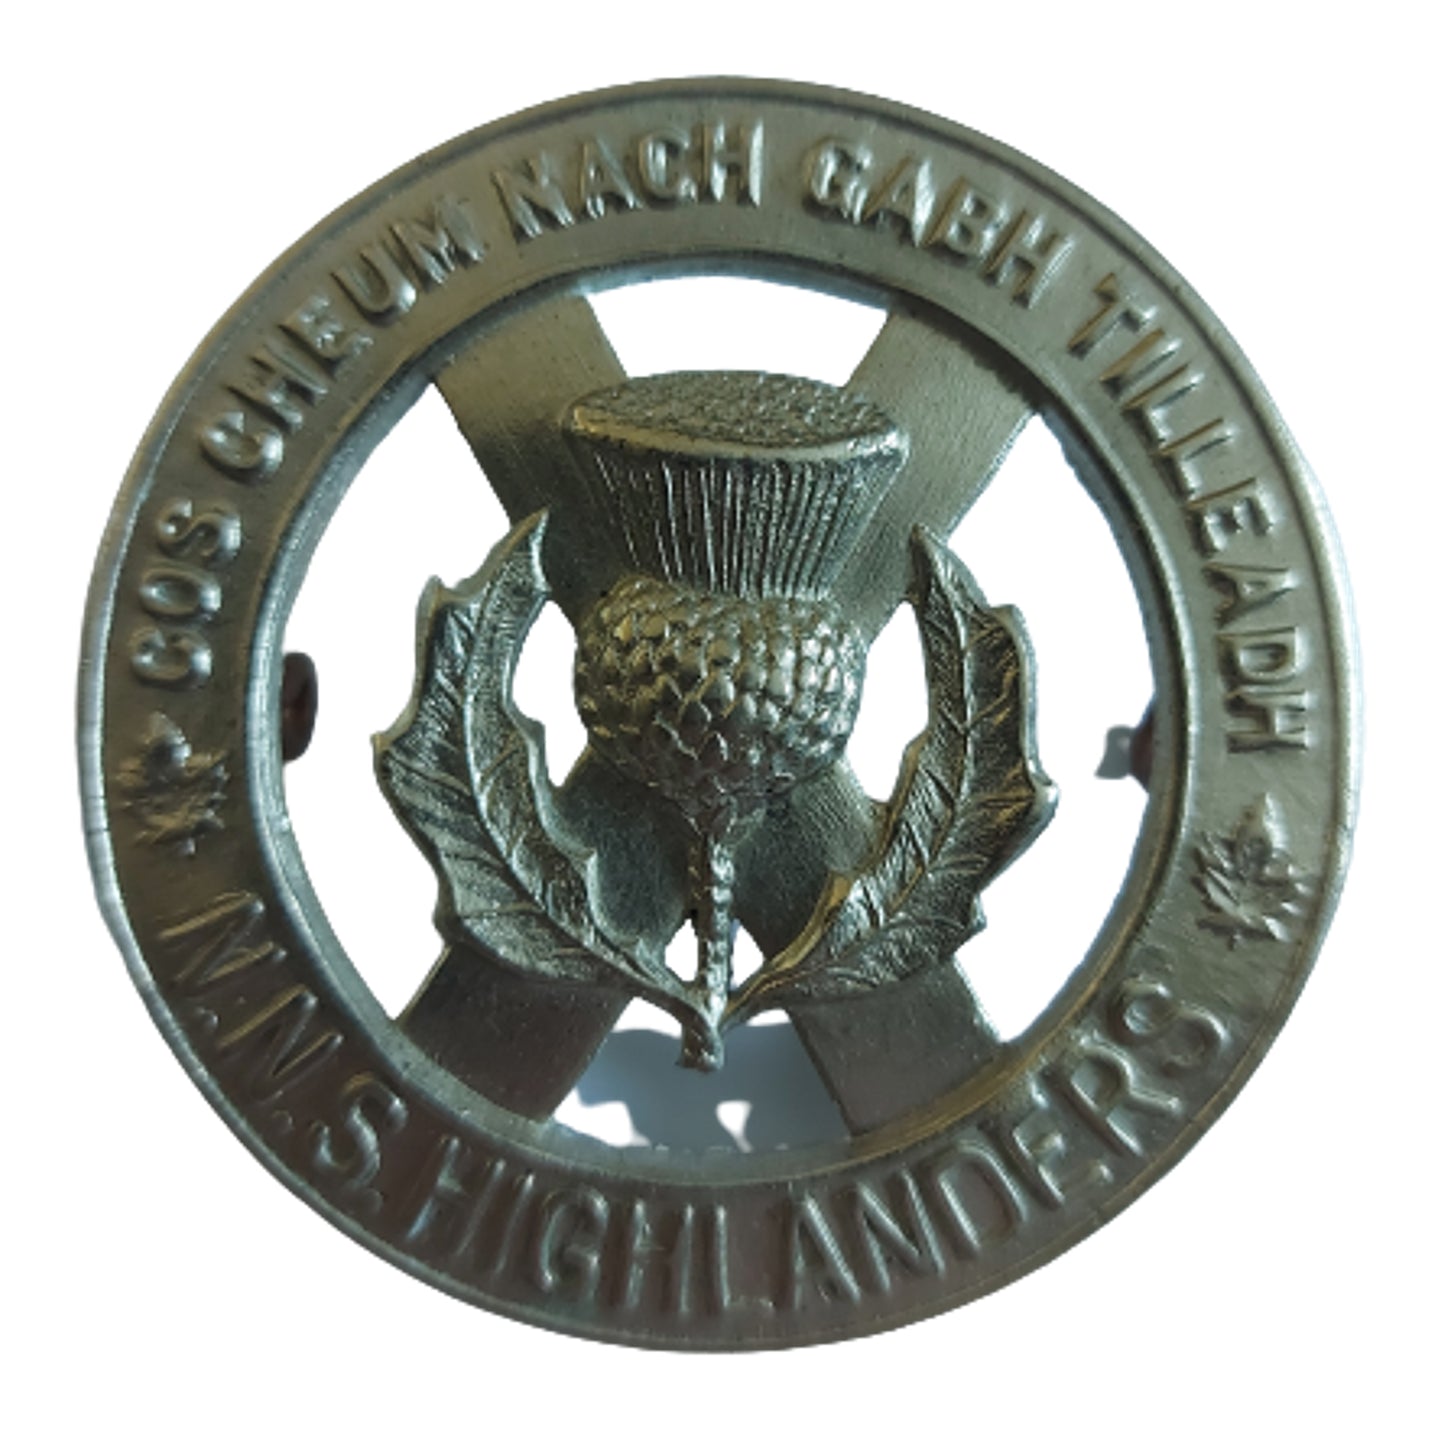 WW2 Canadian North Nova Scotia Highlanders Cap Badge